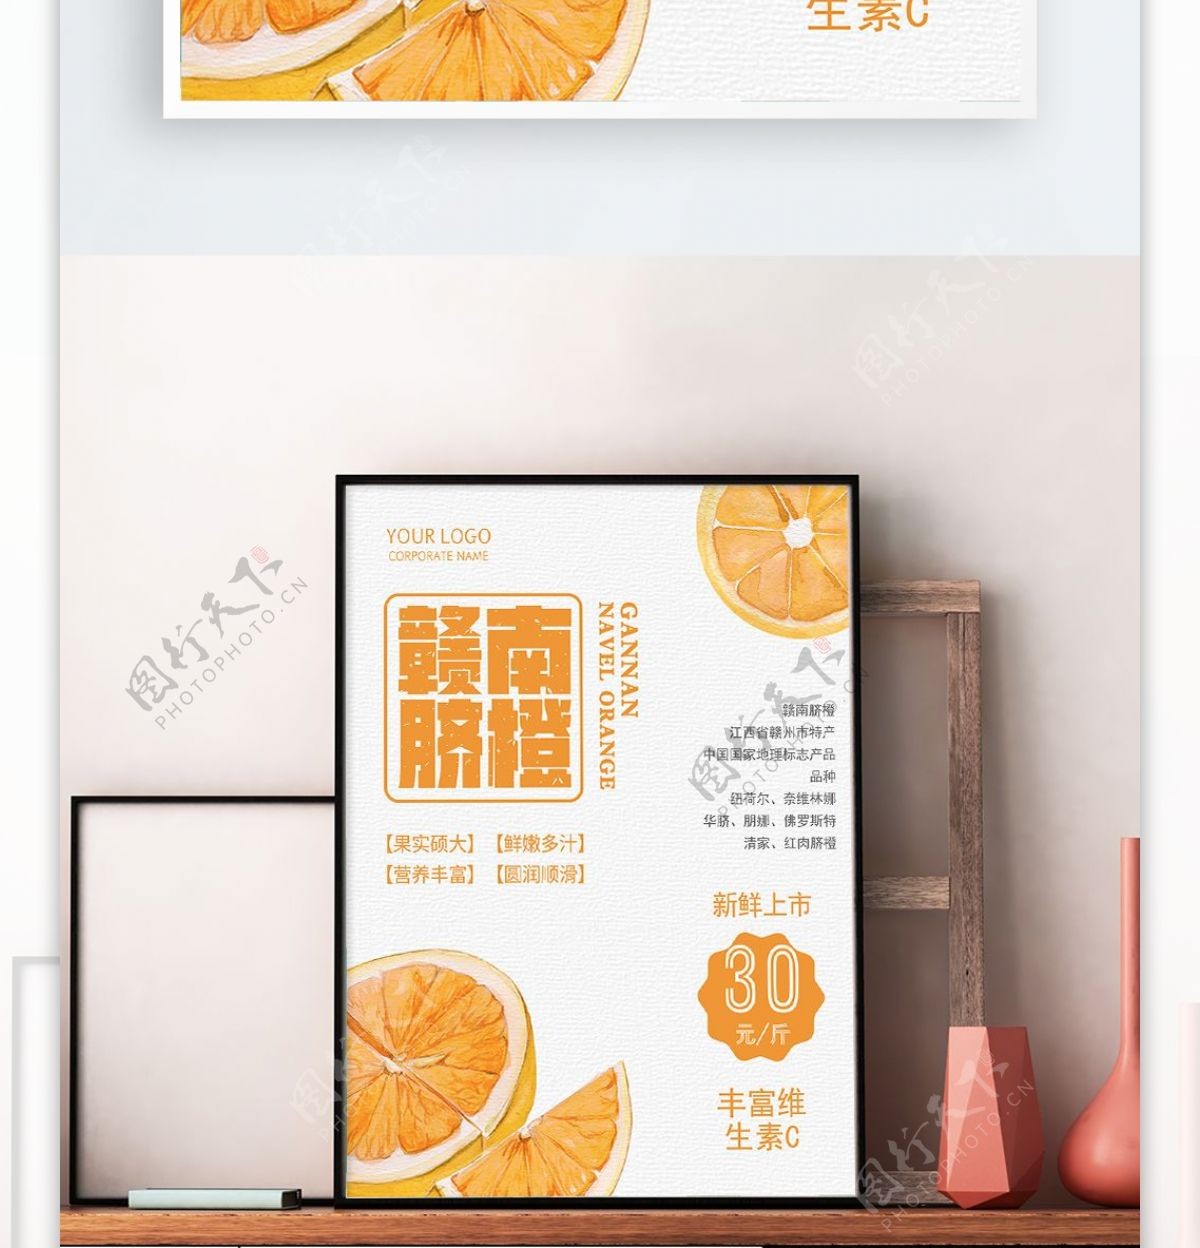 原创水果店手绘水果橙子海报模版下载